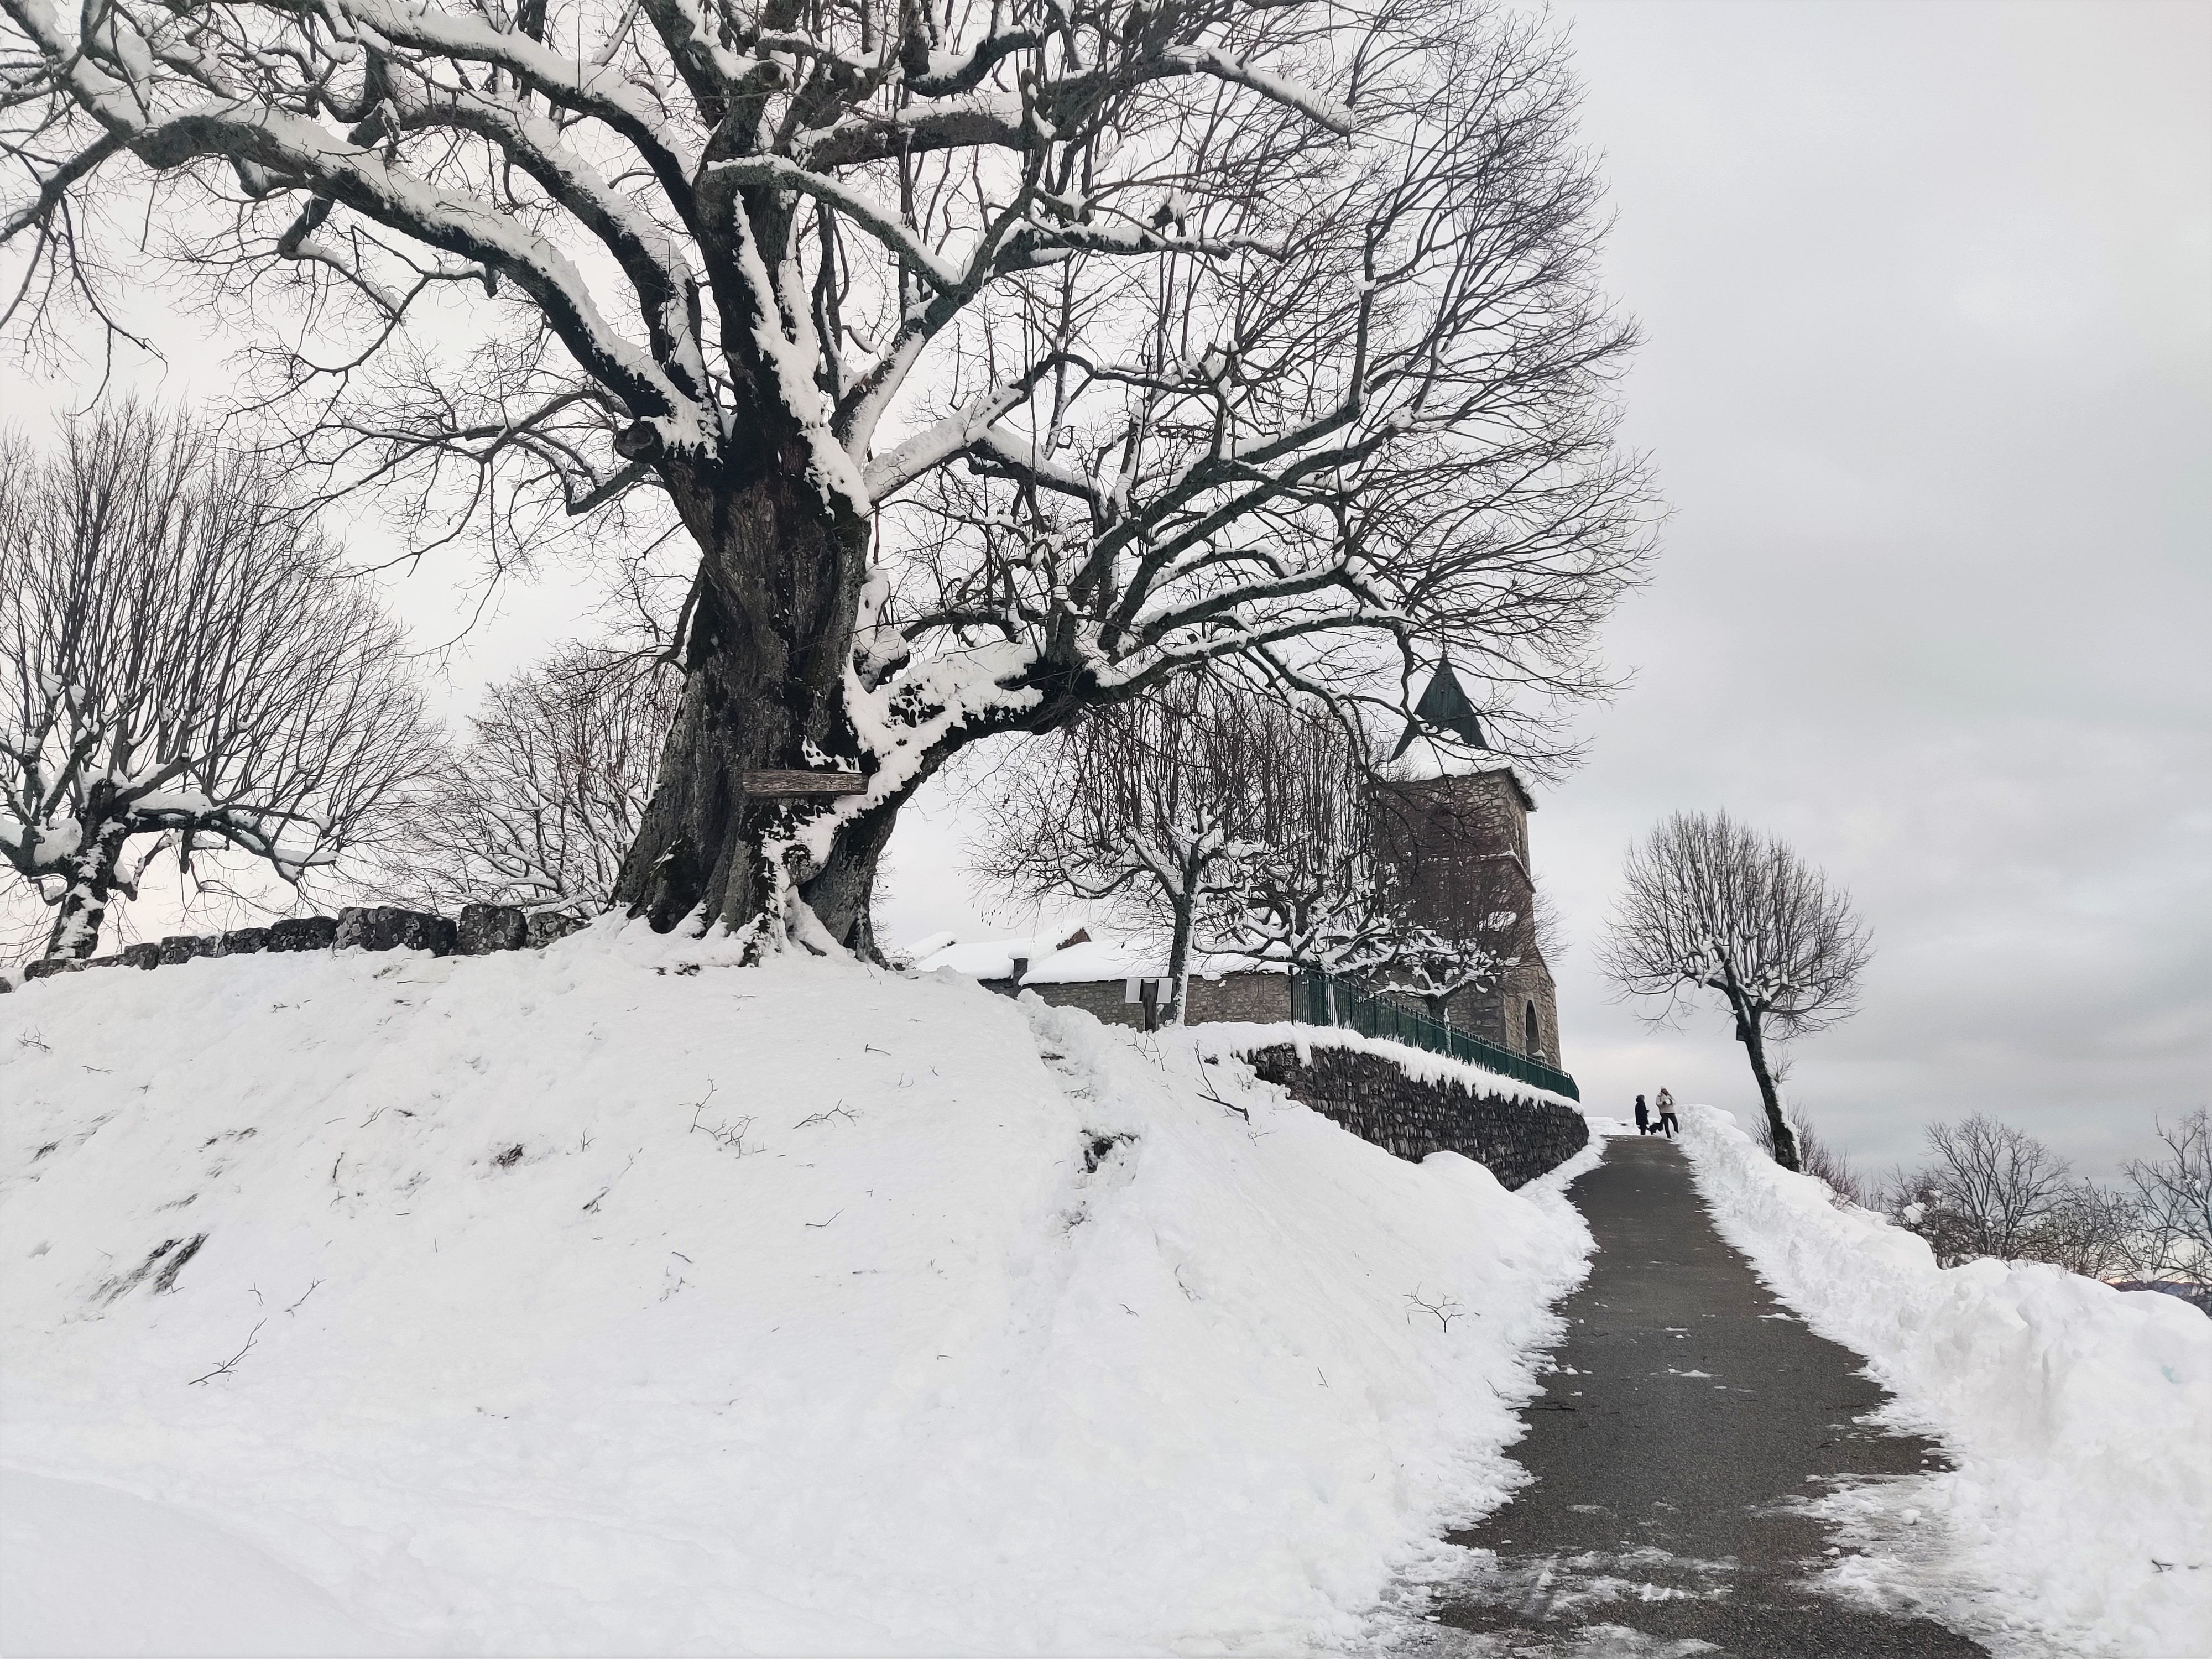 Sully et église Innimond en hiver sous la neige 2_ Charles Saisset